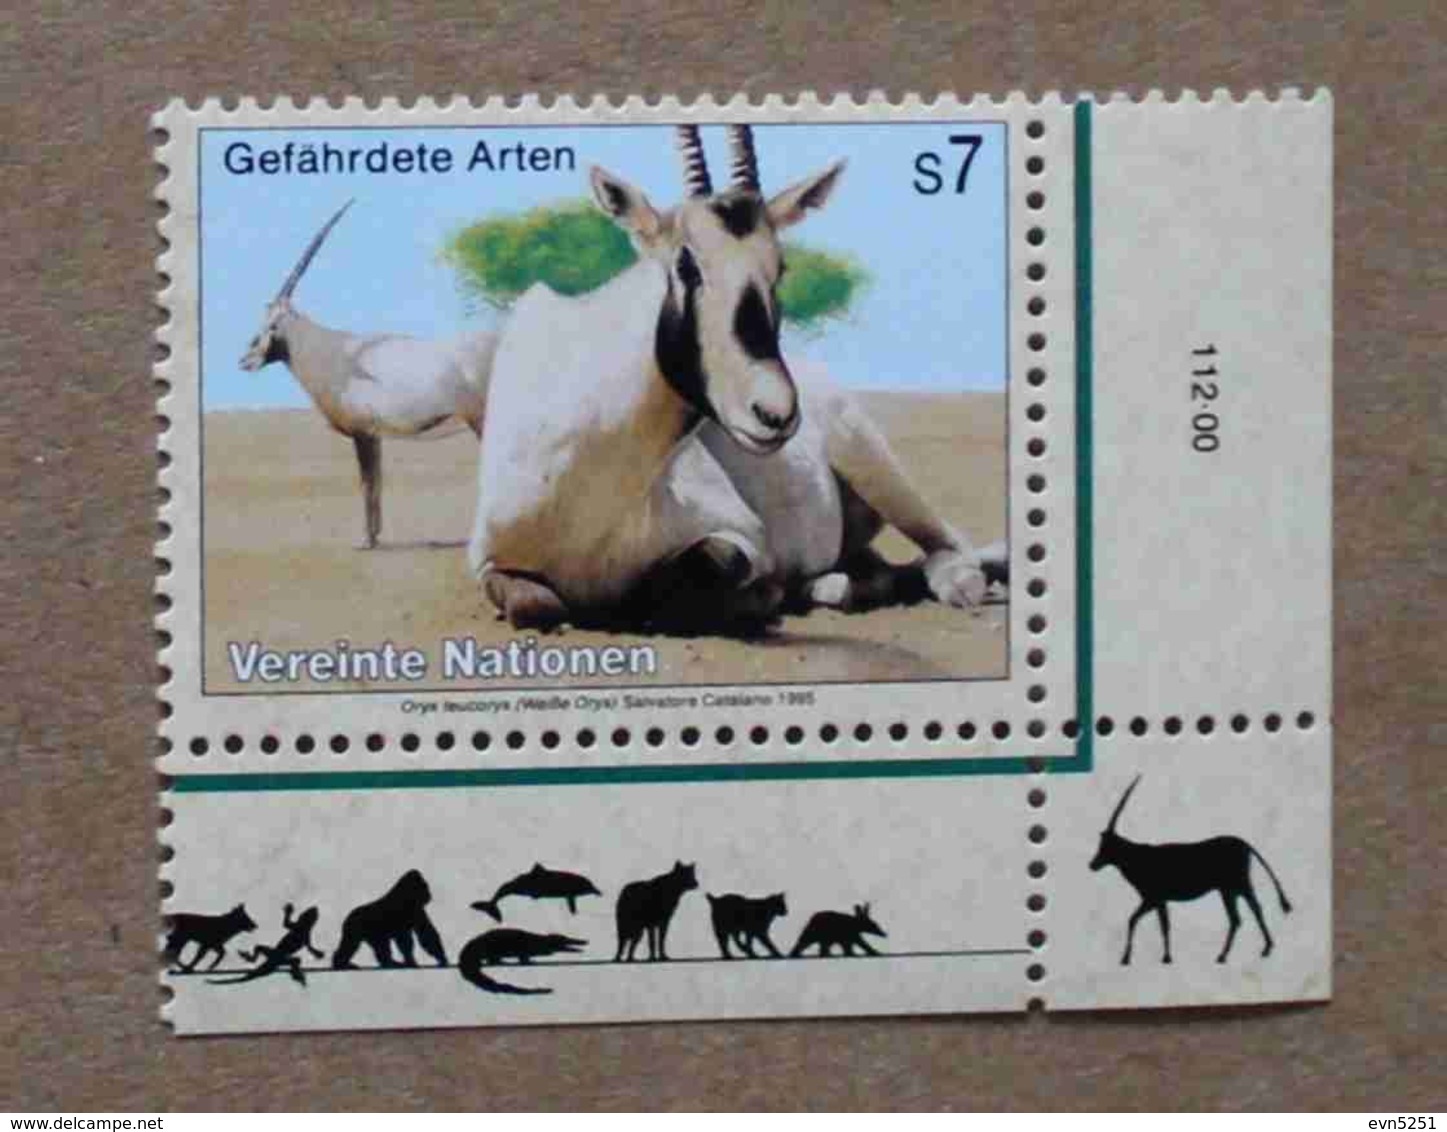 Vi95-01 : Nations-Unies (Vienne) / Protection De La Nature - Oryx Leucoryx (Oryx D'Arabie) - Ungebraucht